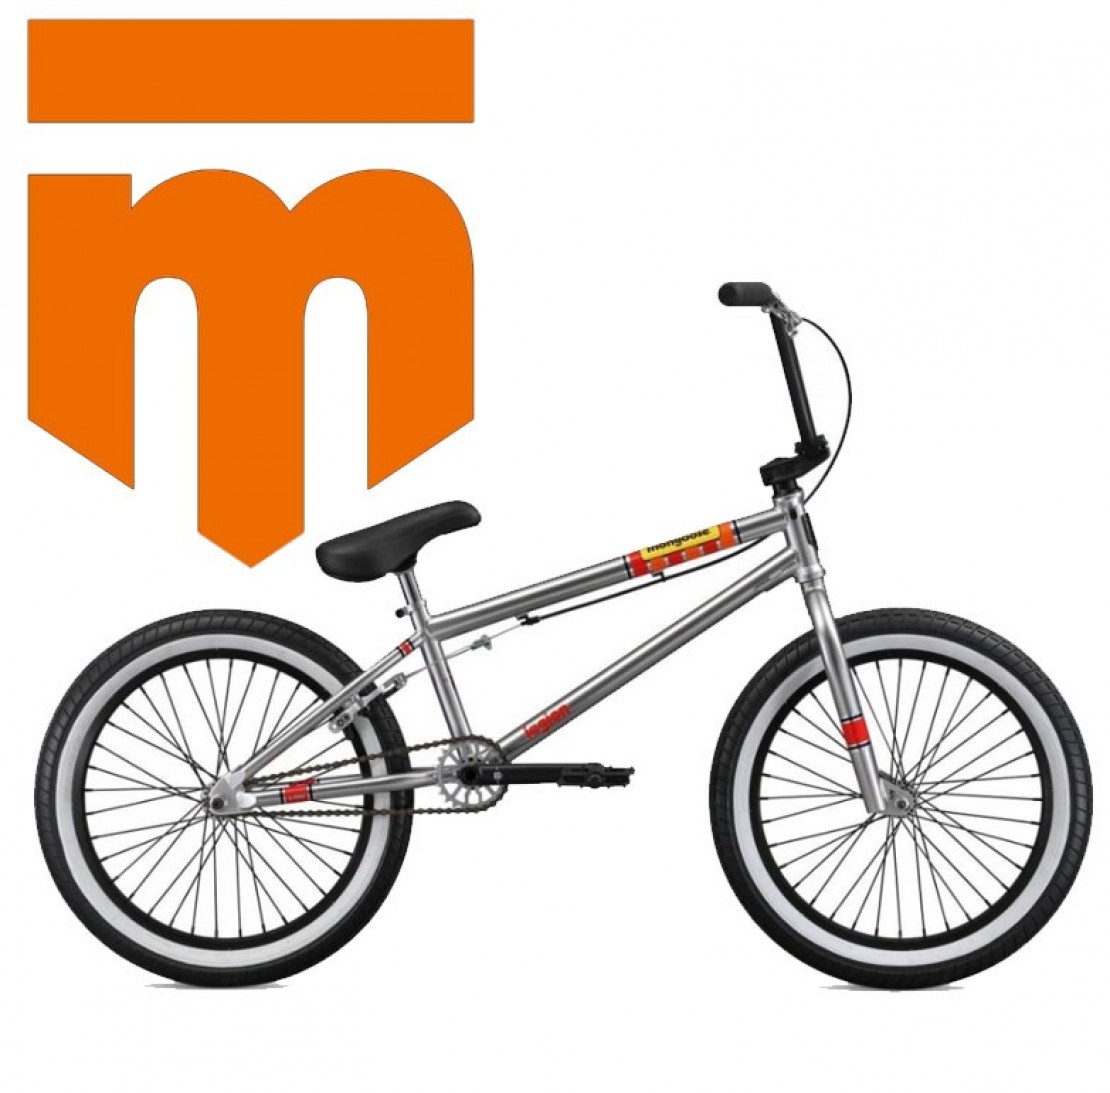 Mongoose Bike Size Chart